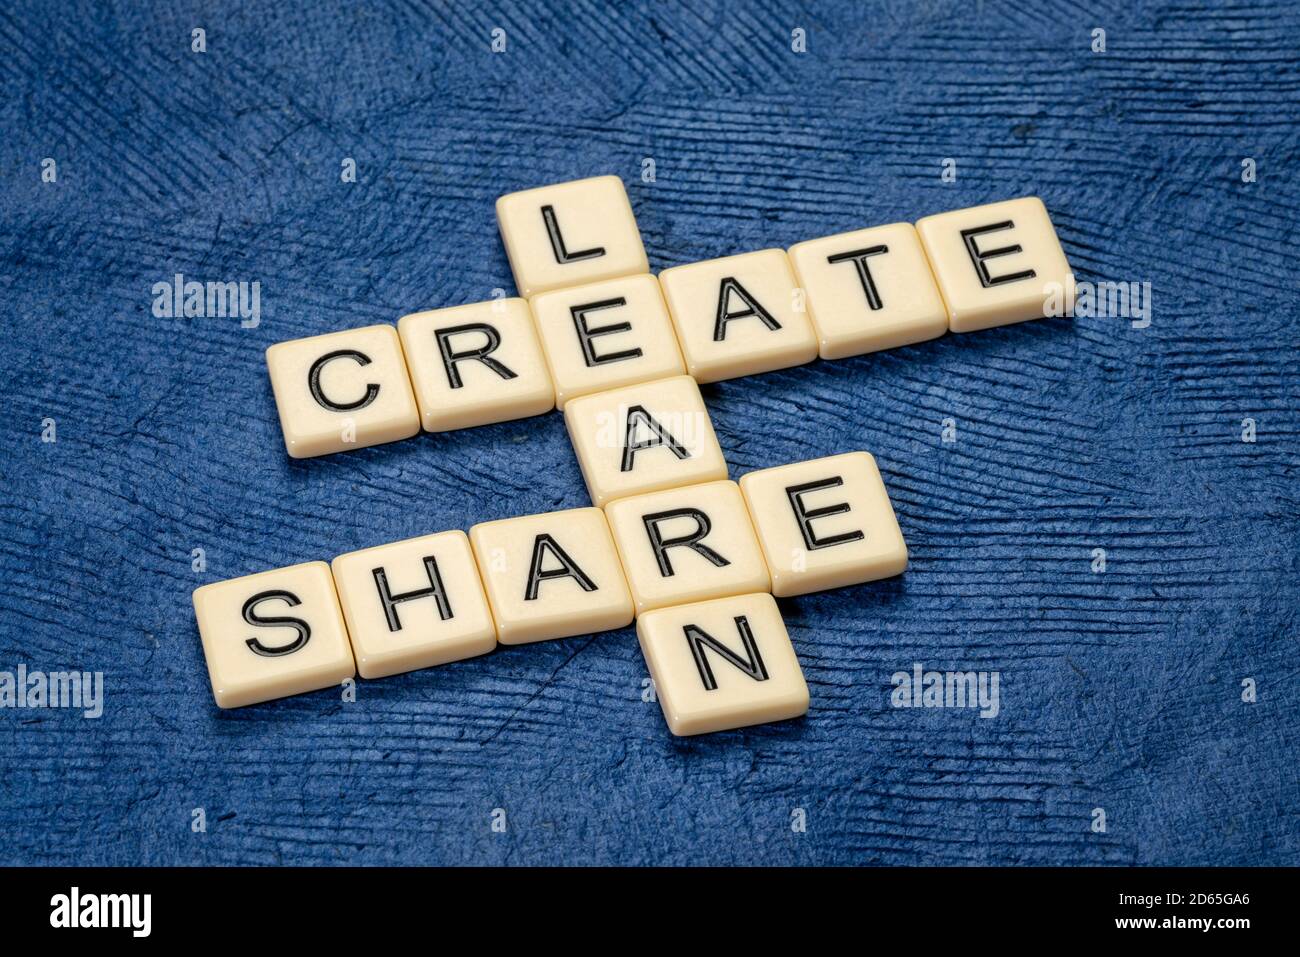 apprendre, créer et partager des mots croisés en lettres ivoire contre le papier texturé, l'apprentissage, la créativité, le réseautage et le concept de travail d'équipe Banque D'Images